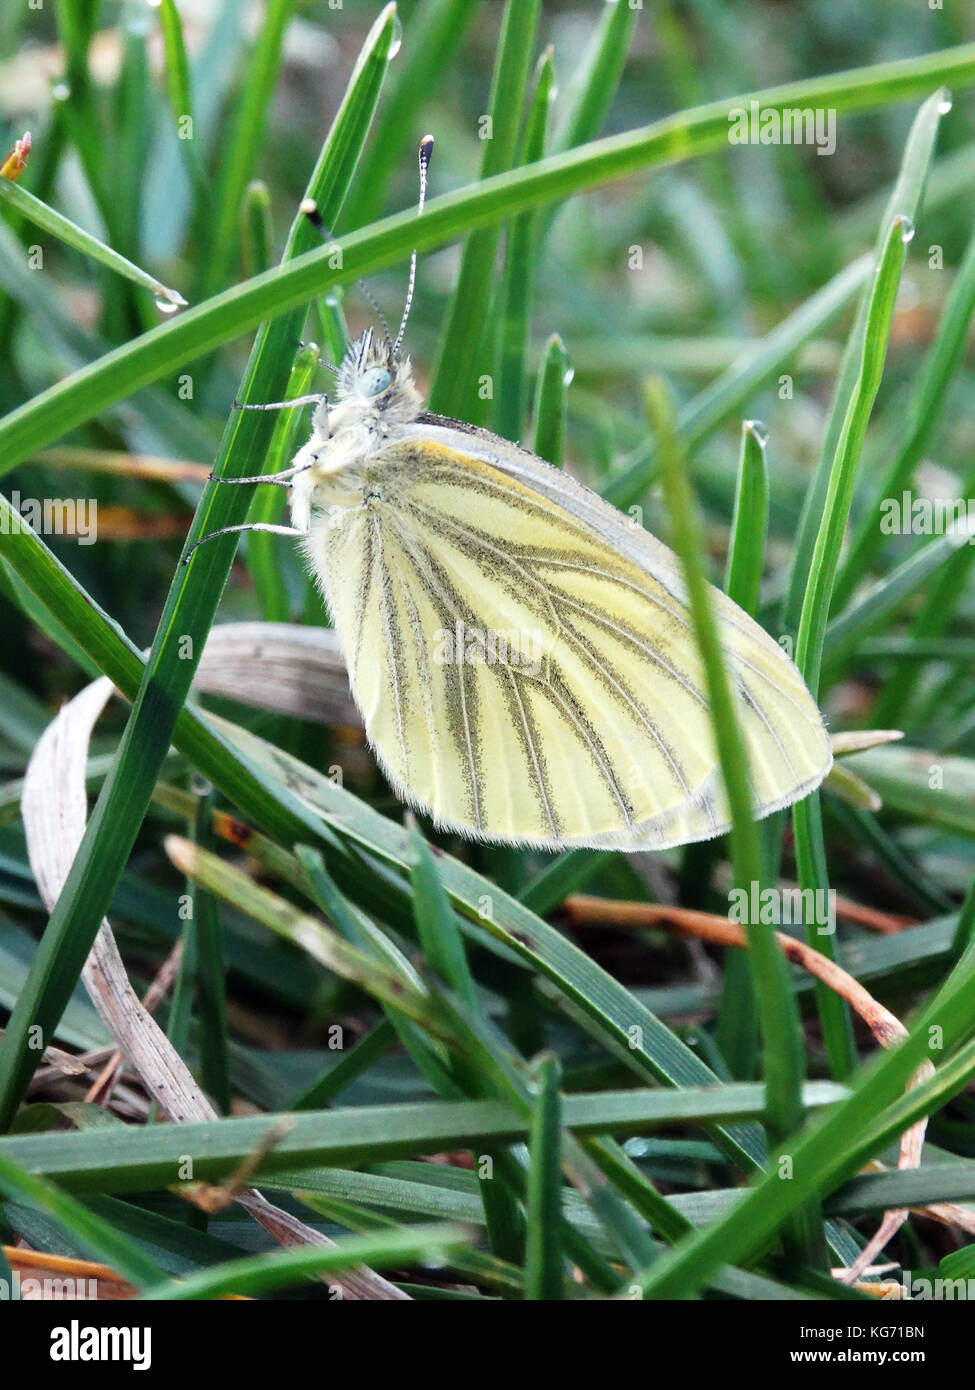 Closeup of pierid butterfly climbing up a blade of grass Stock Photo